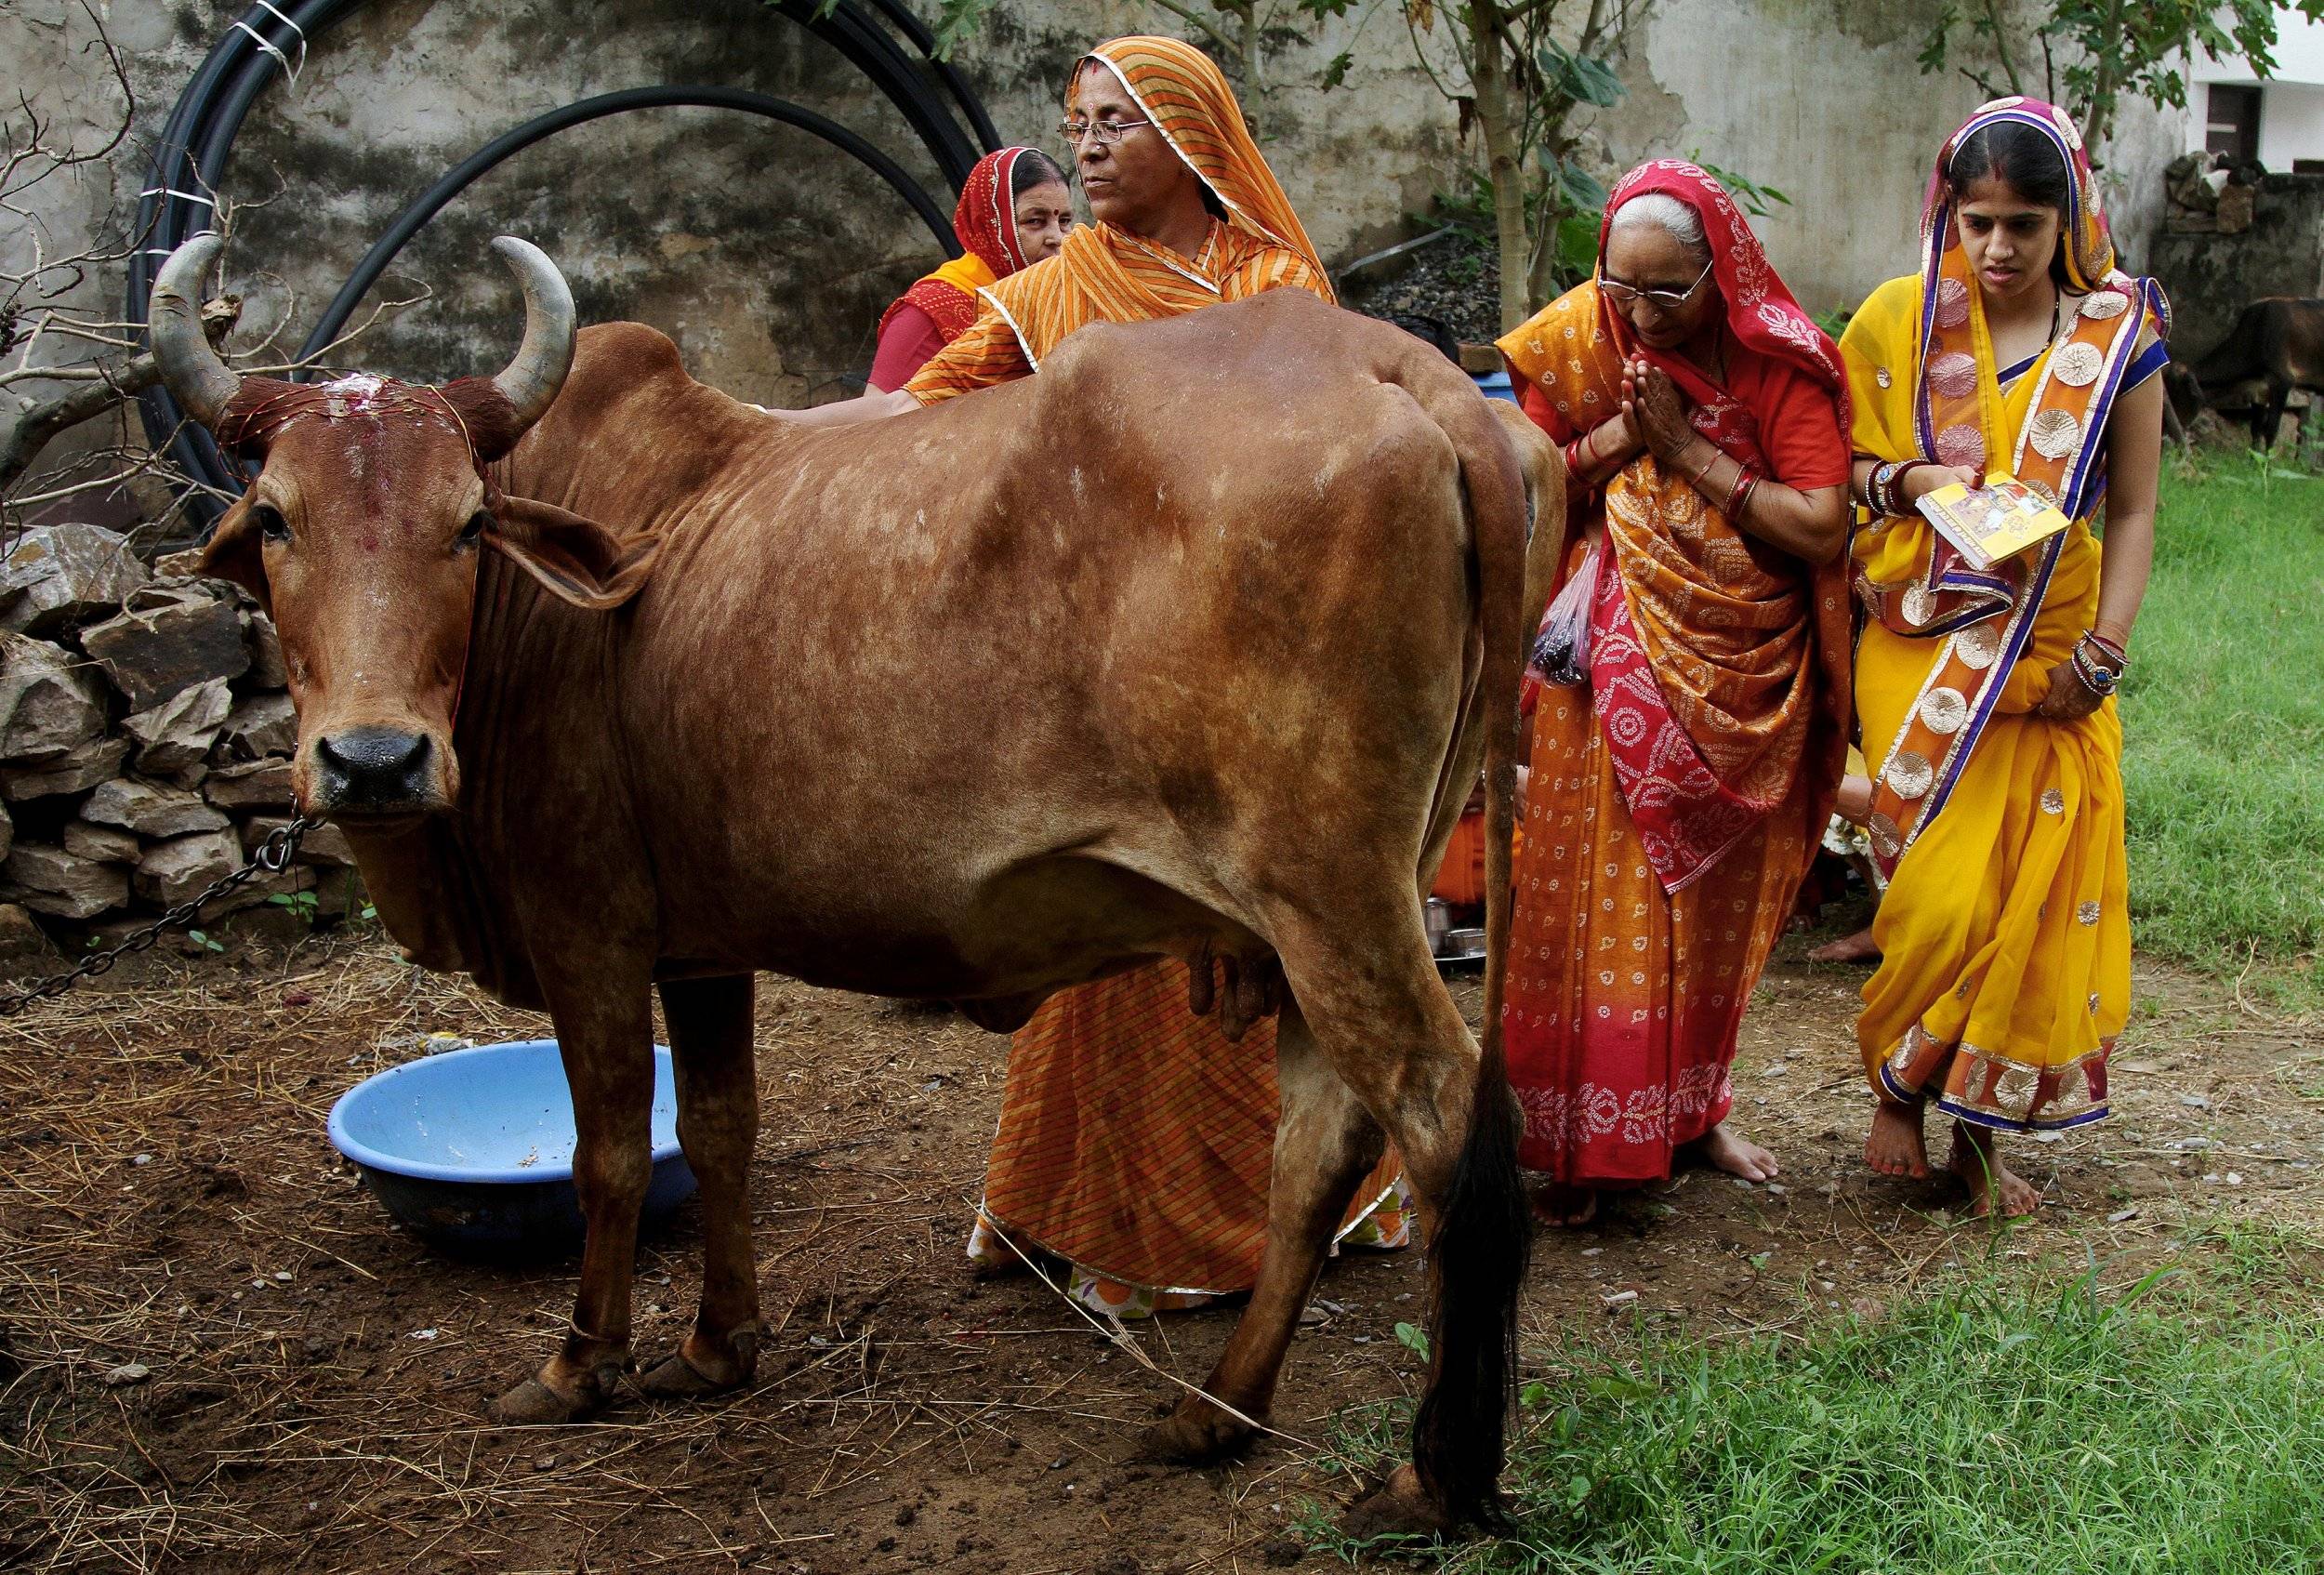 Почему в индии корова — священное животное: кратко, по каким индийским обычаям она считается в стране важной, и что, по сути, с ней делают индусы, едят ли или доят?